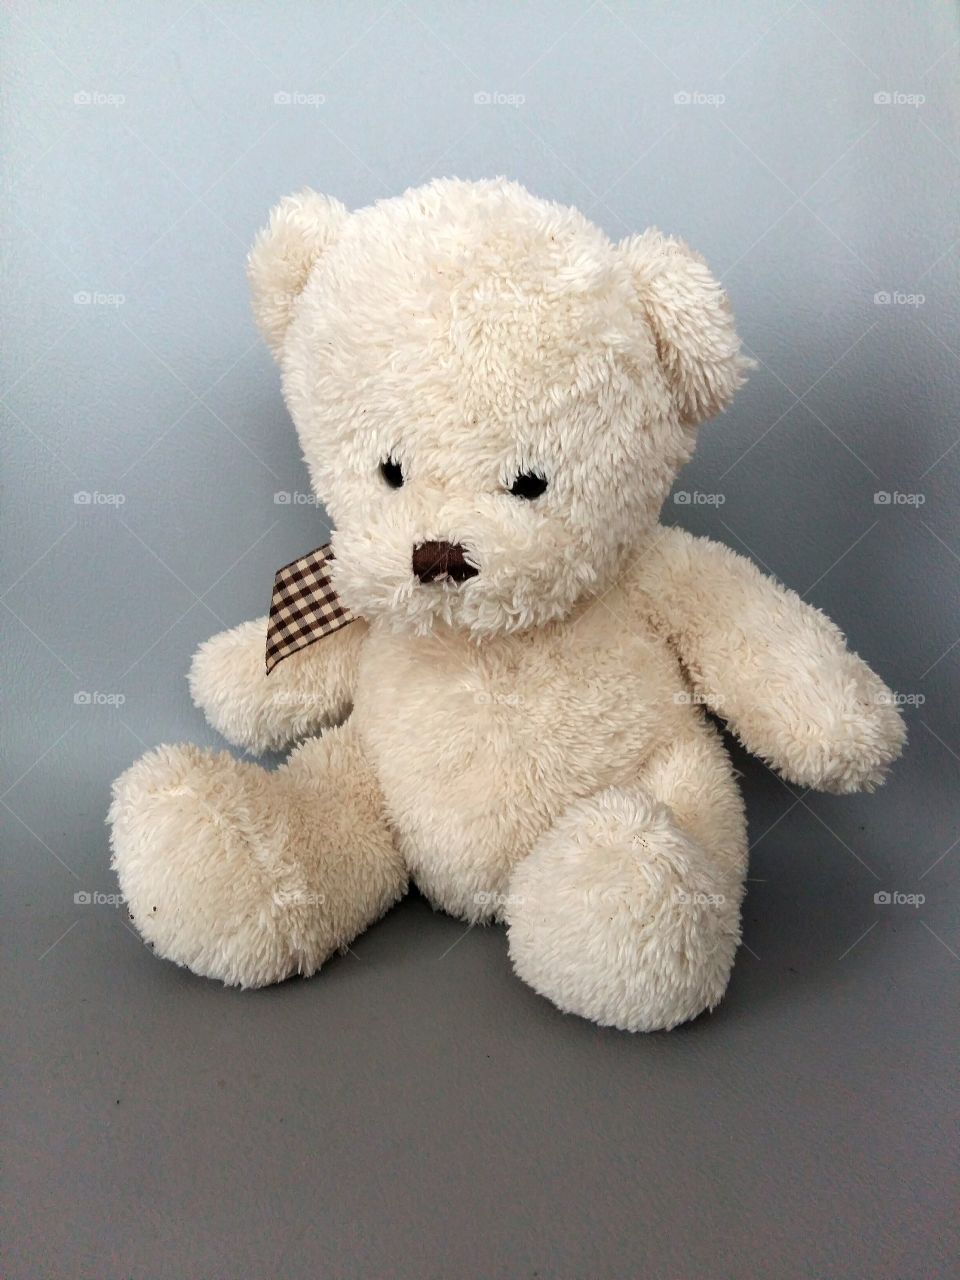 Teddy bear sitting on grey background